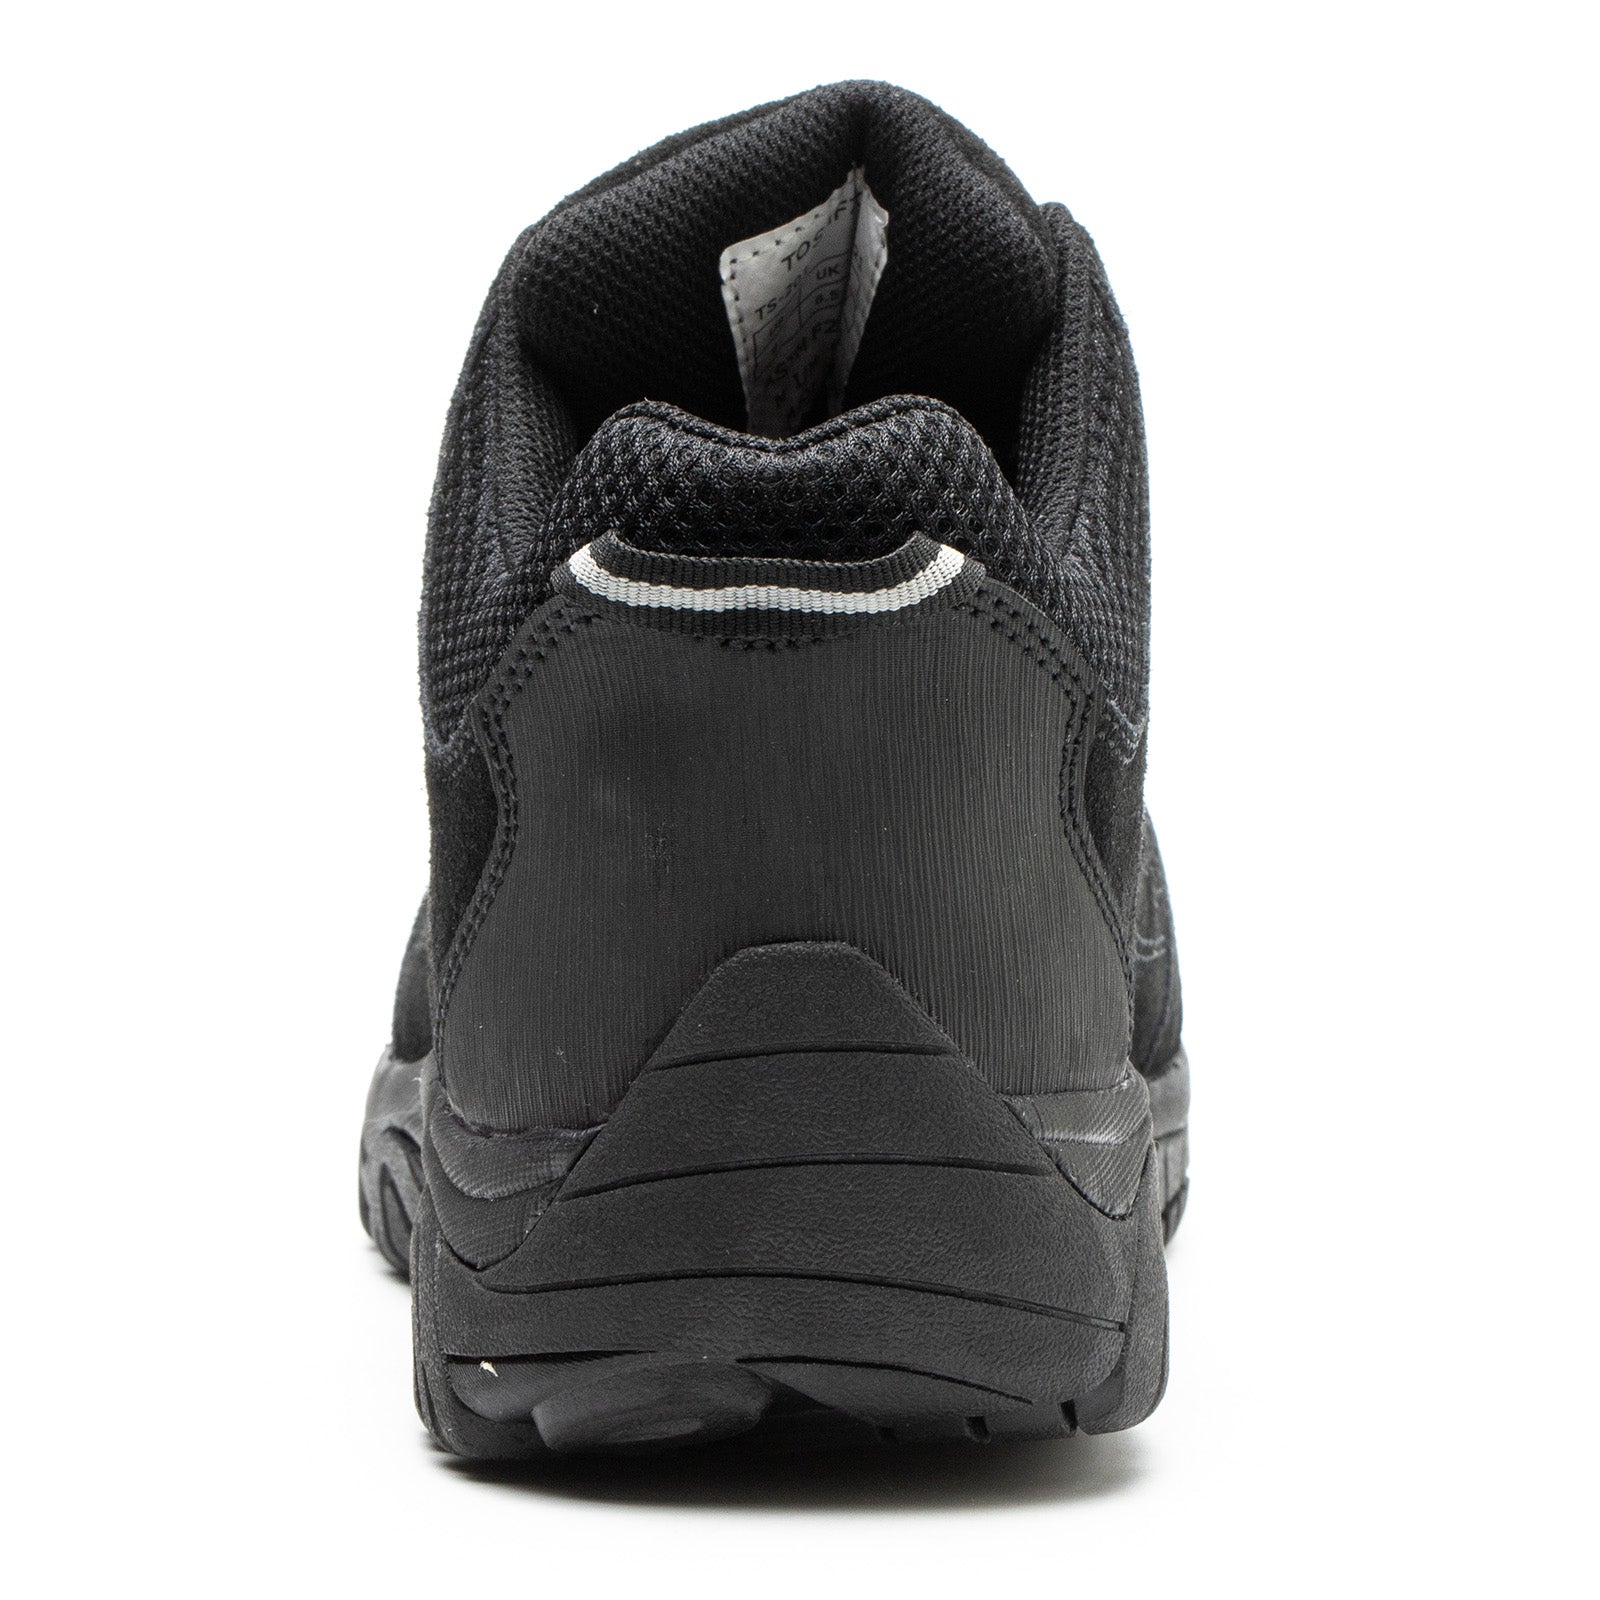 TS-201 Steel Toe 100% Waterproof Safety Work Shoes